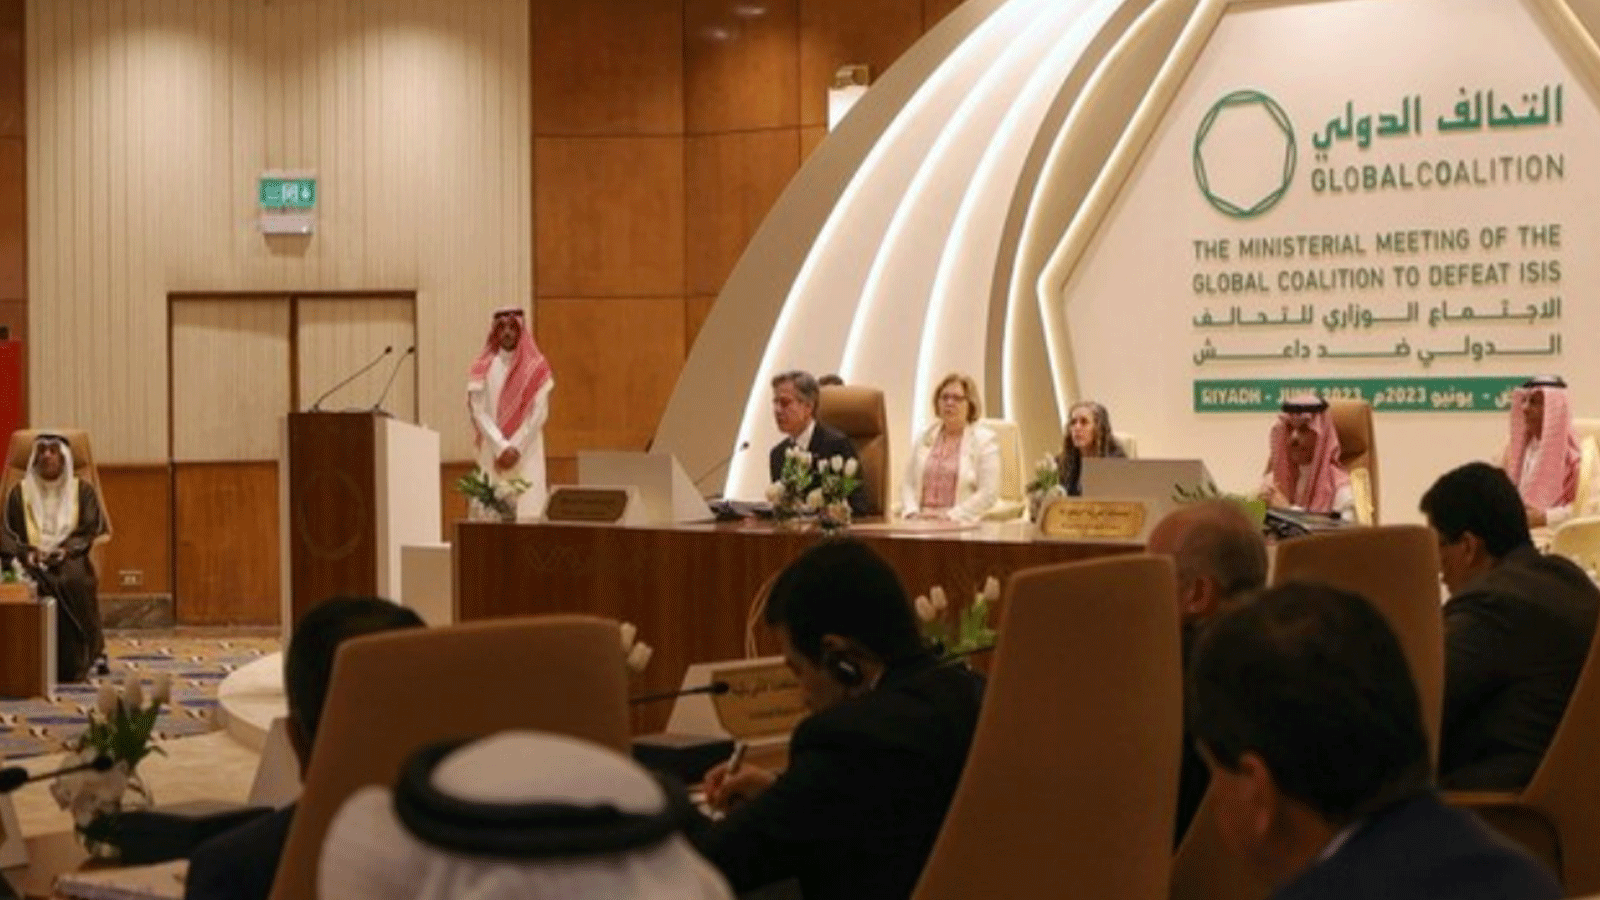 لقطة للاجتماع الوزاري للتحالف الدولي ضد داعش في الرياض